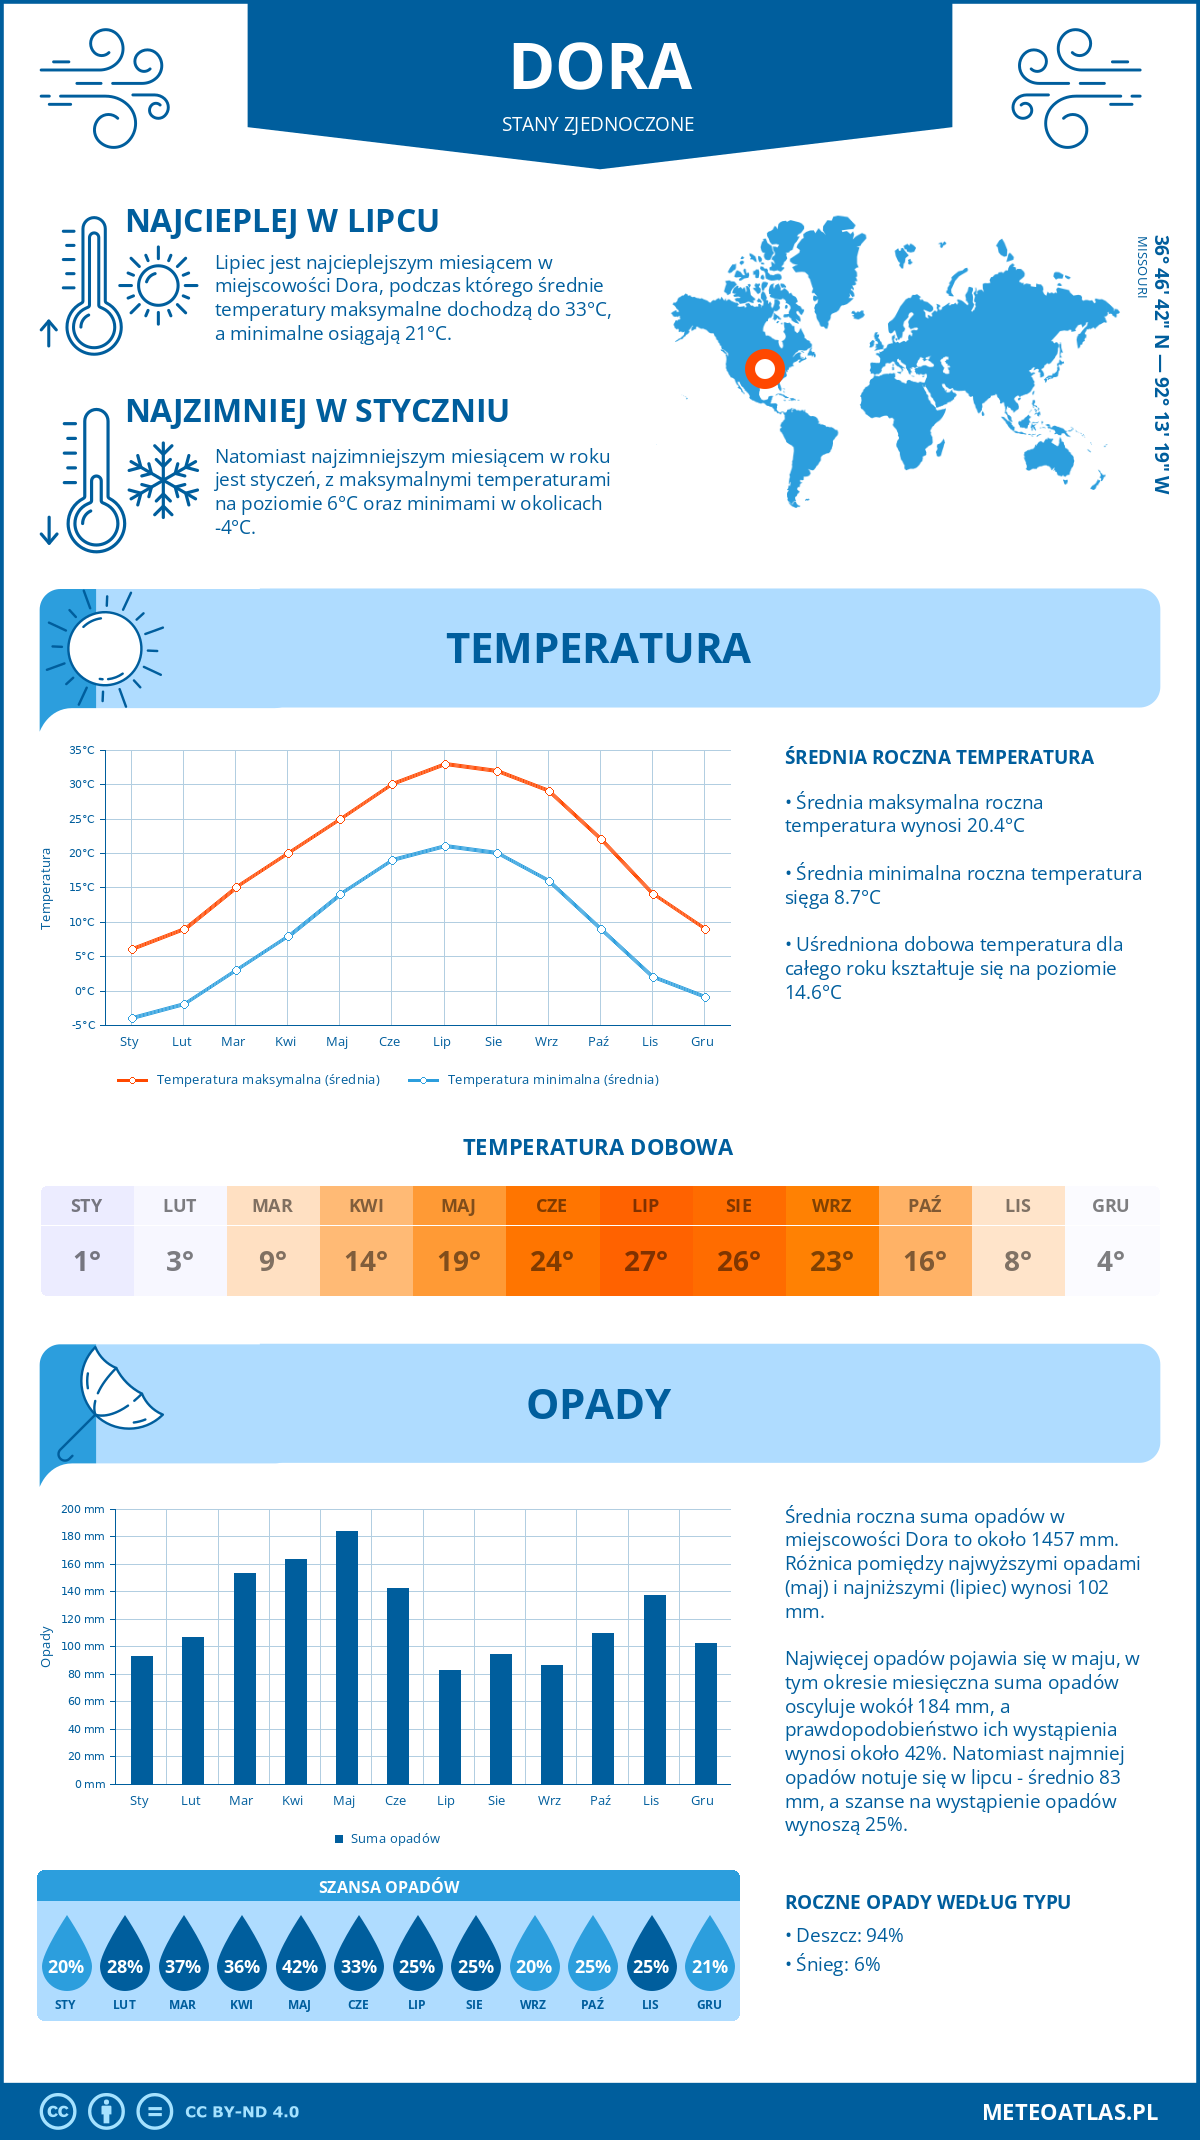 Pogoda Dora (Stany Zjednoczone). Temperatura oraz opady.